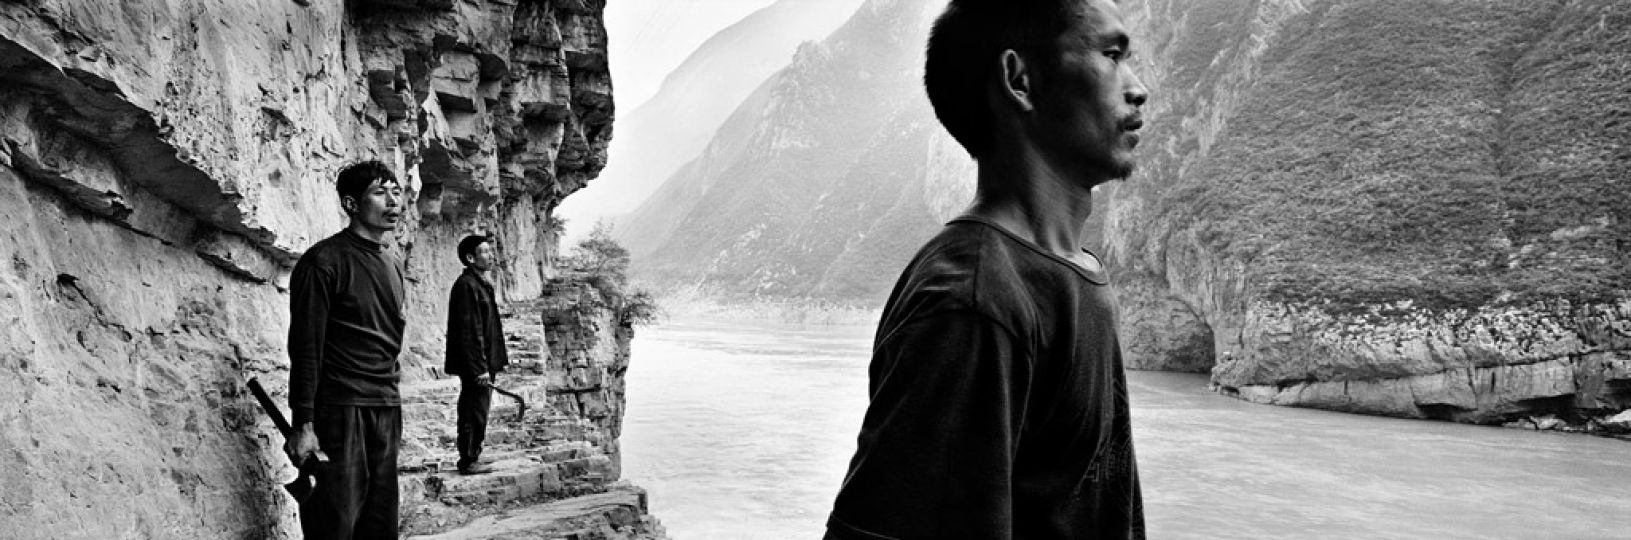 © Zeng Nian, Trois bûcherons sur l’ancienne piste creusée dans le rocher surplombant la porte de Kui (kuimen) de 3 Gorges, Chine. Septembre 1996.